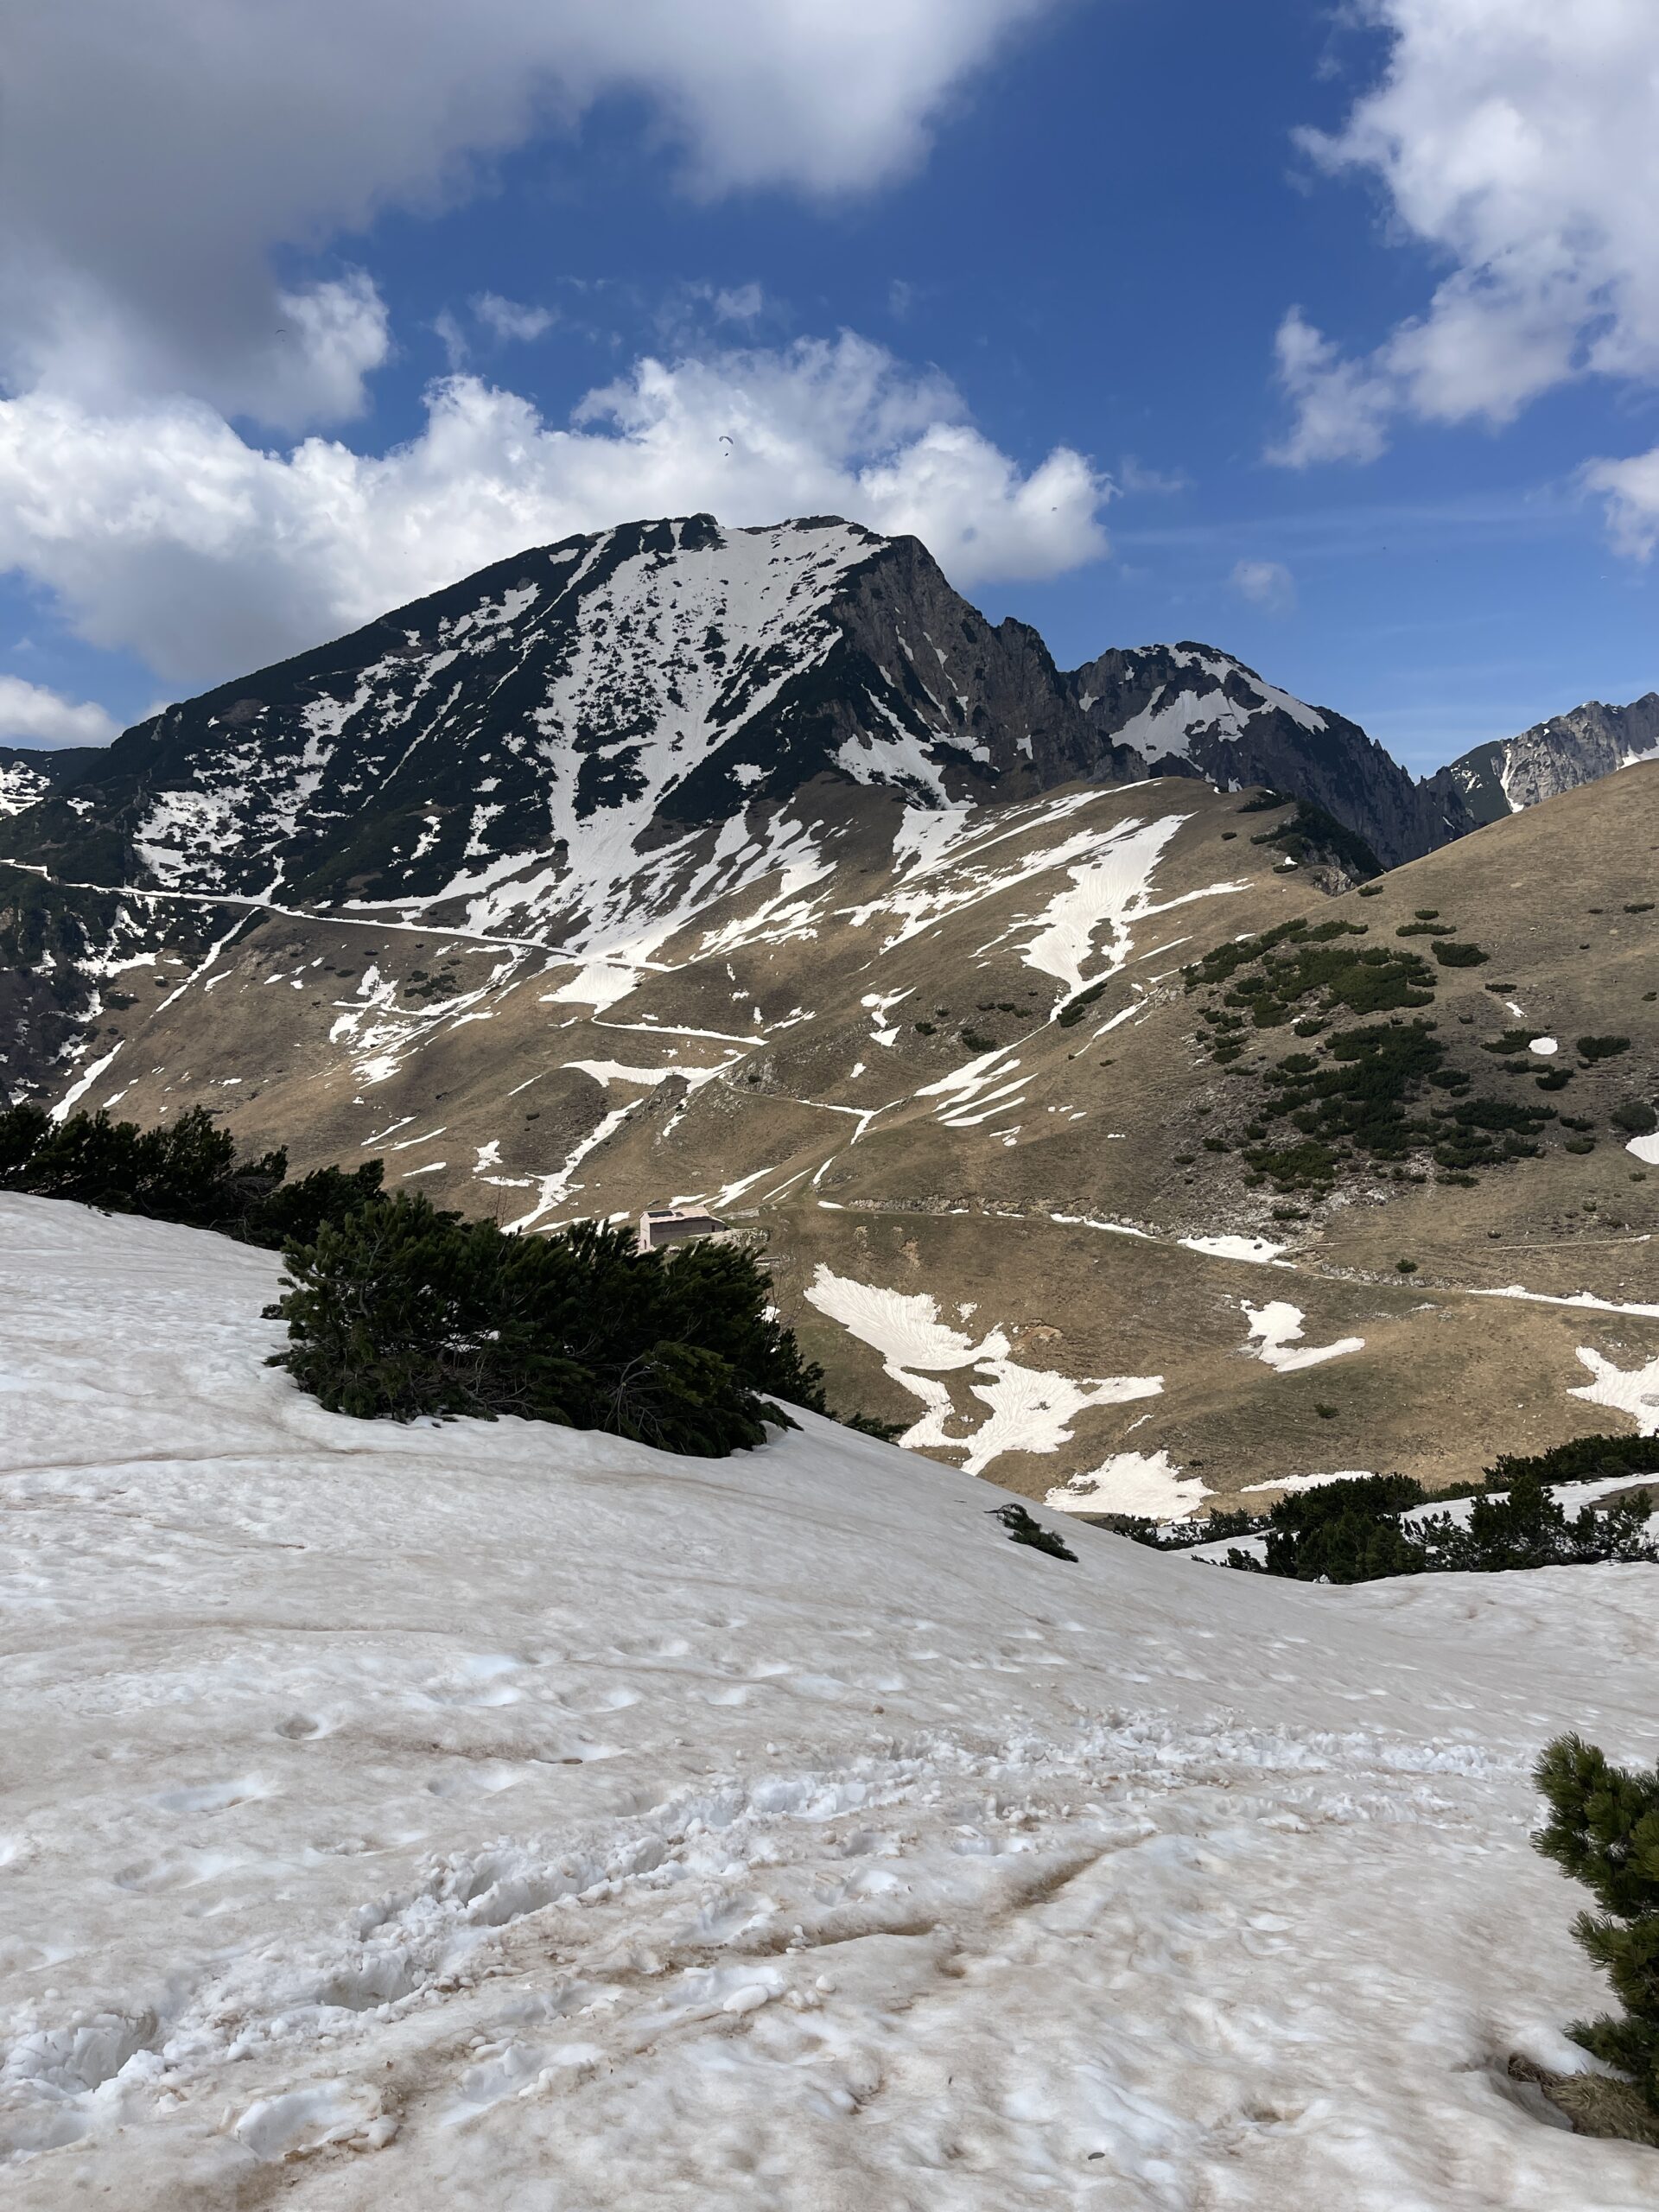 Uno sguardo al Monte Zevola con qualche traccia di neve ancora